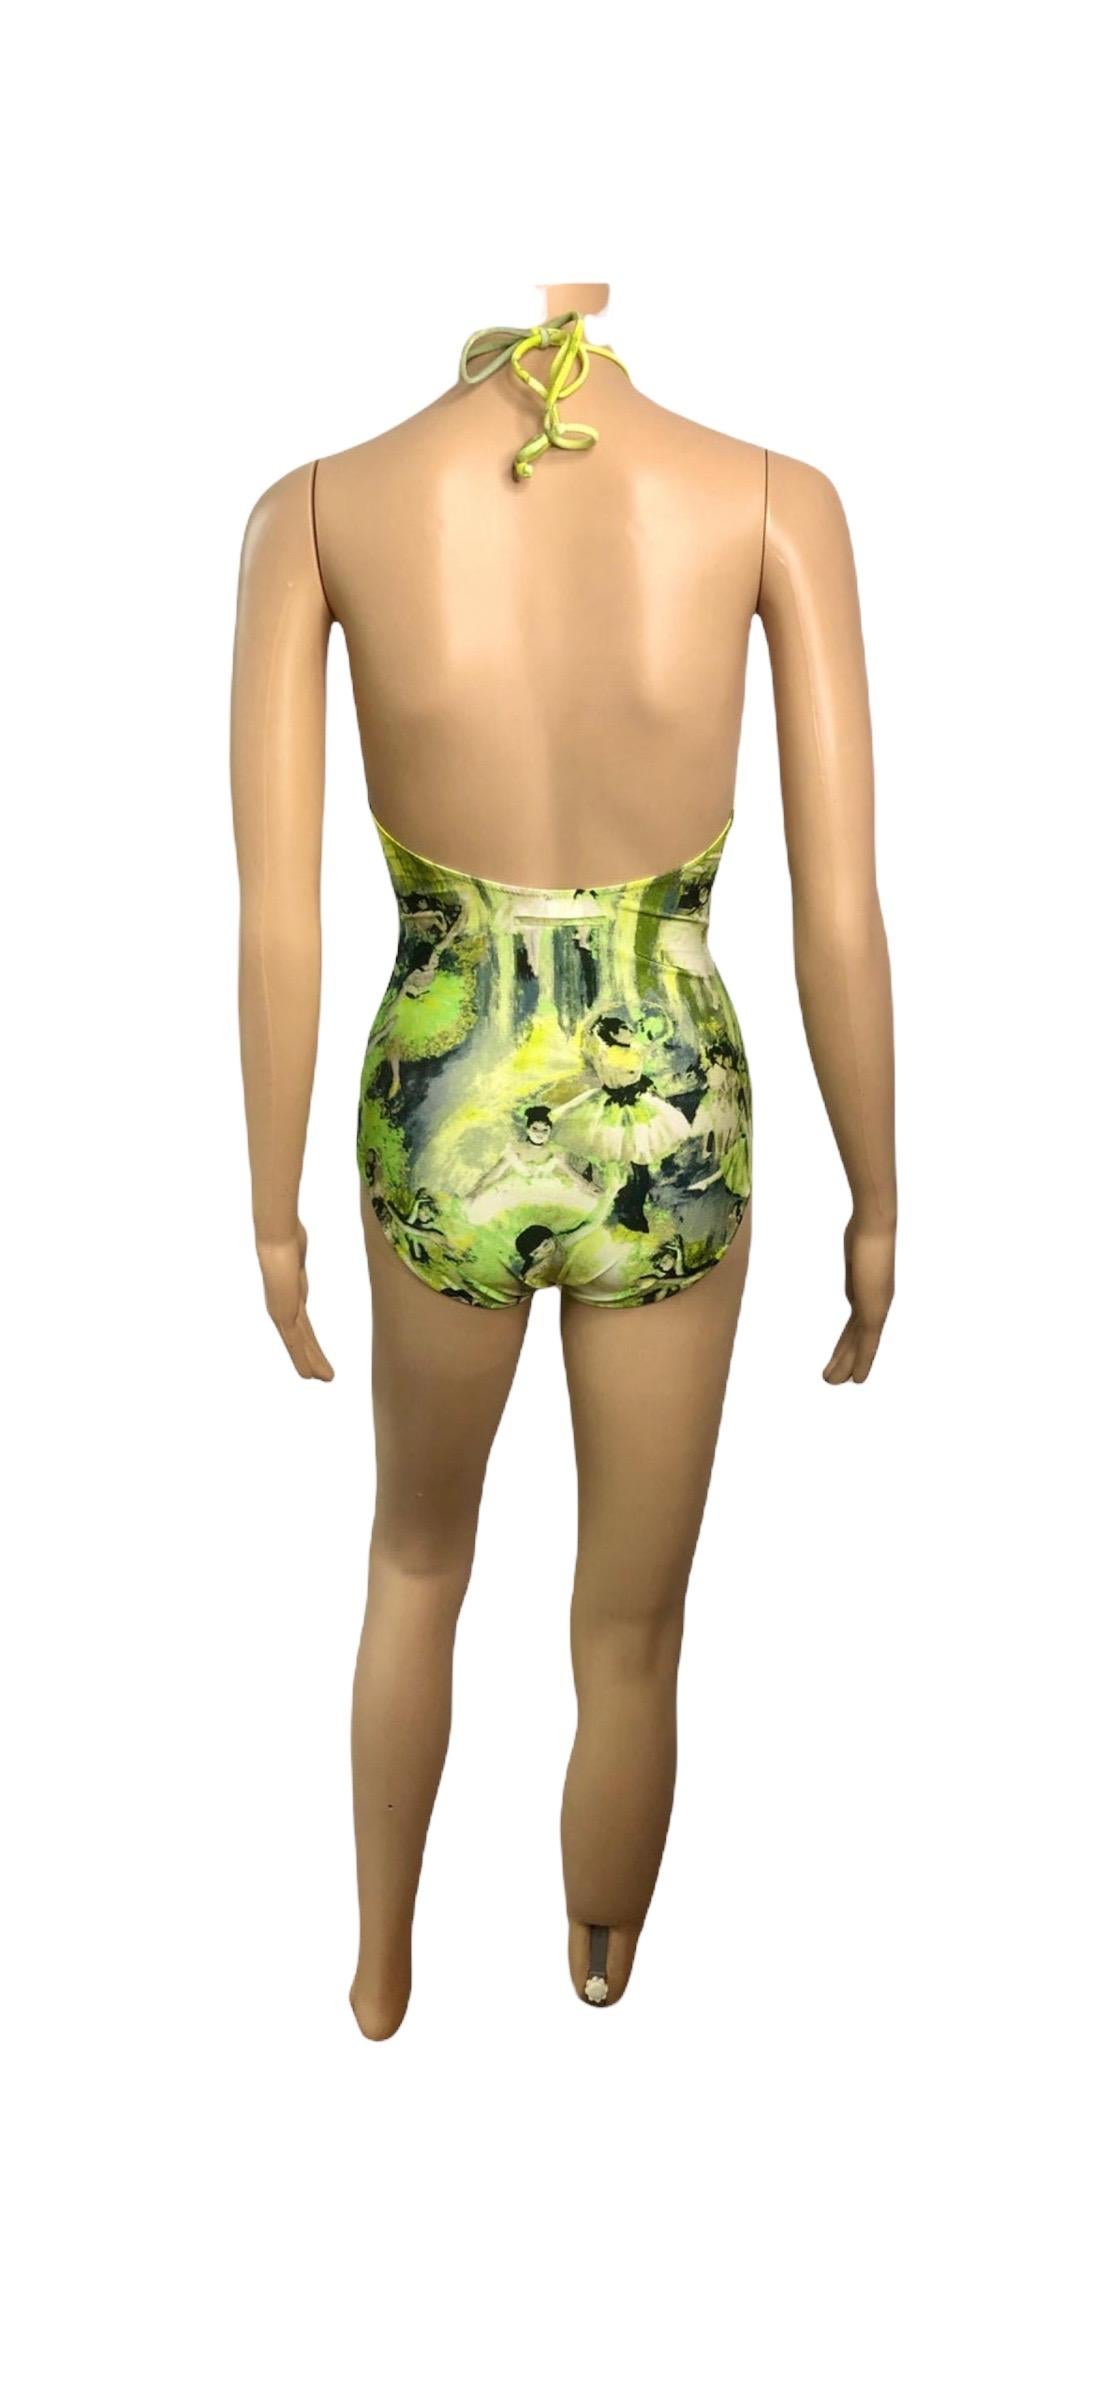 Jean Paul Gaultier Soleil S/S 2004 Degas Ballet Bodysuit Swimwear Swimsuit For Sale 3